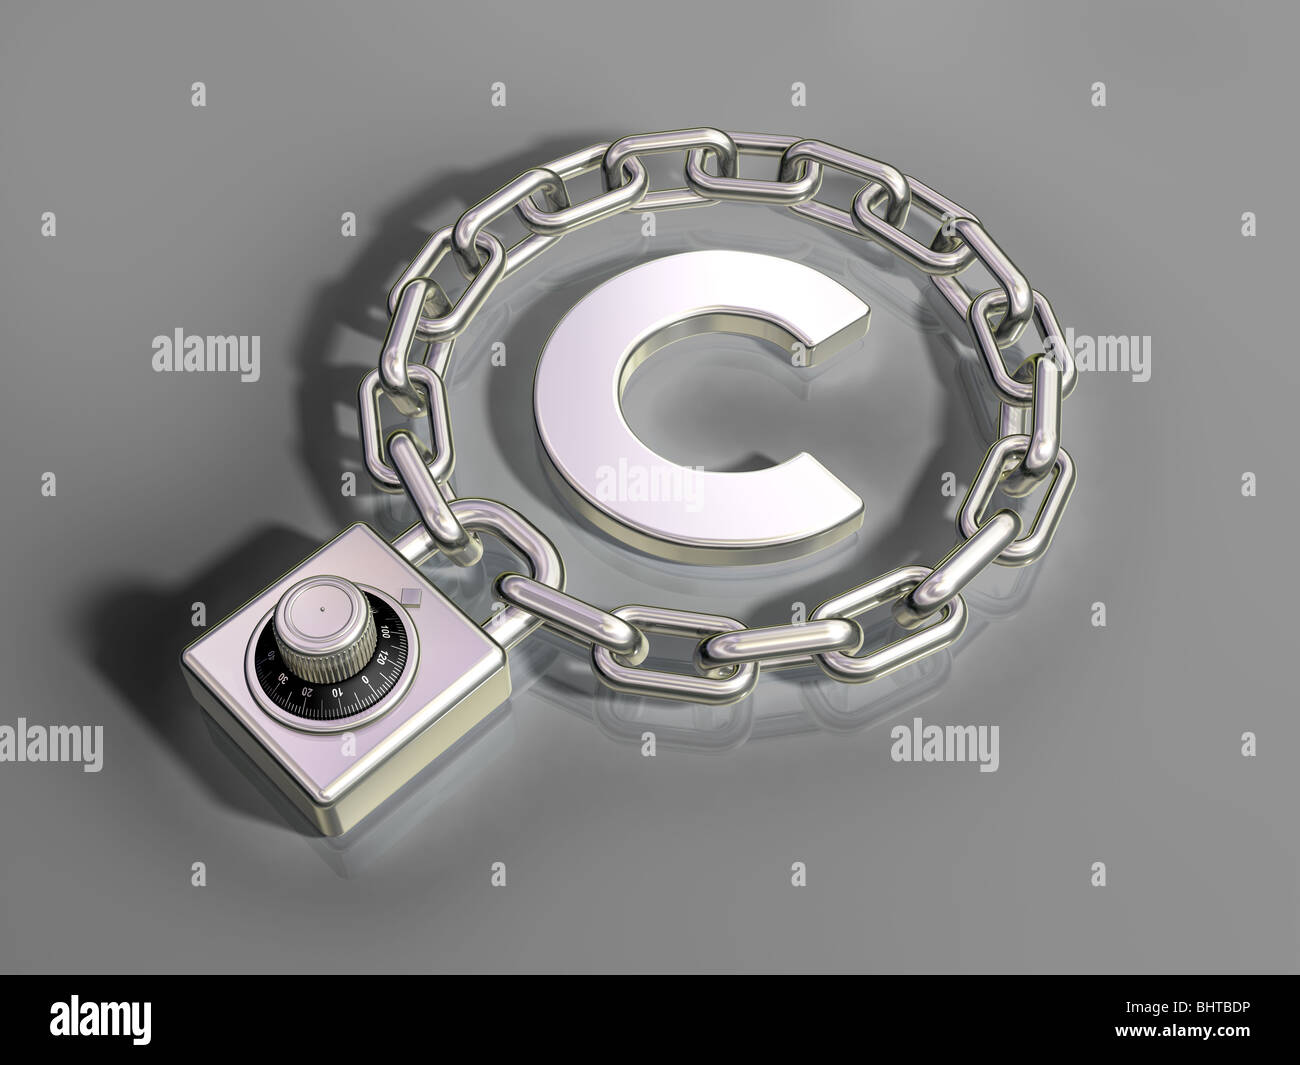 Ilustración de un símbolo de copyright asegurado con un candado Foto de stock